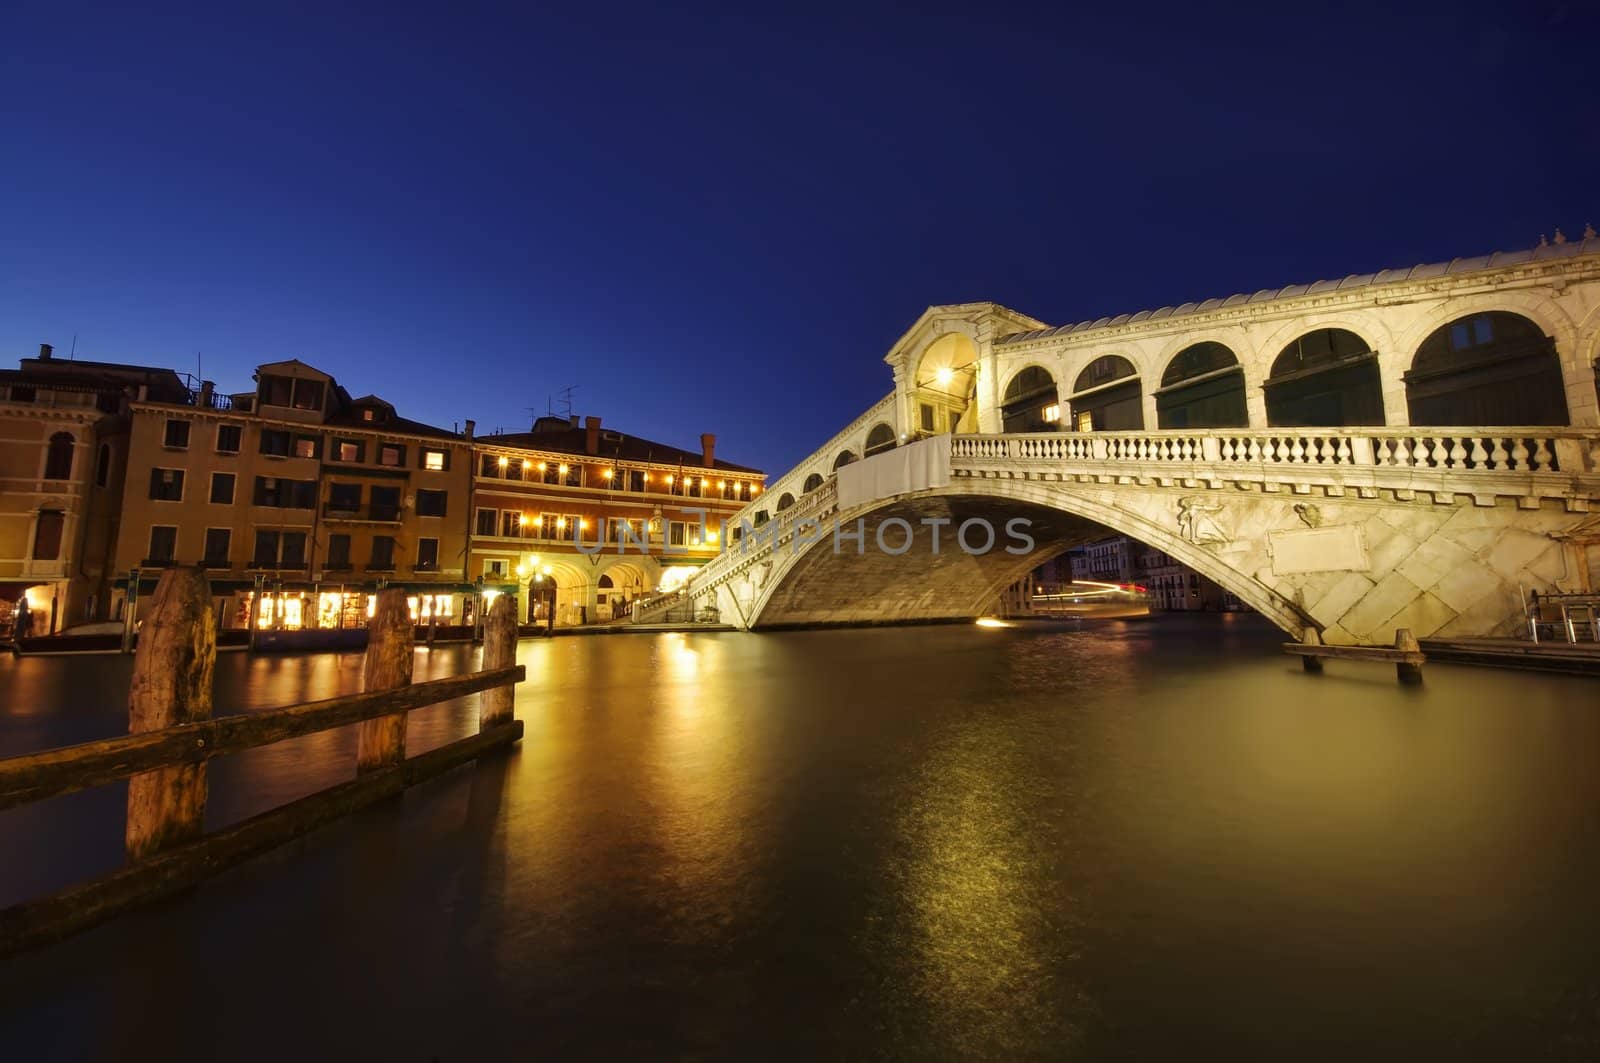 Rialto bridge at night, Venice, Italy